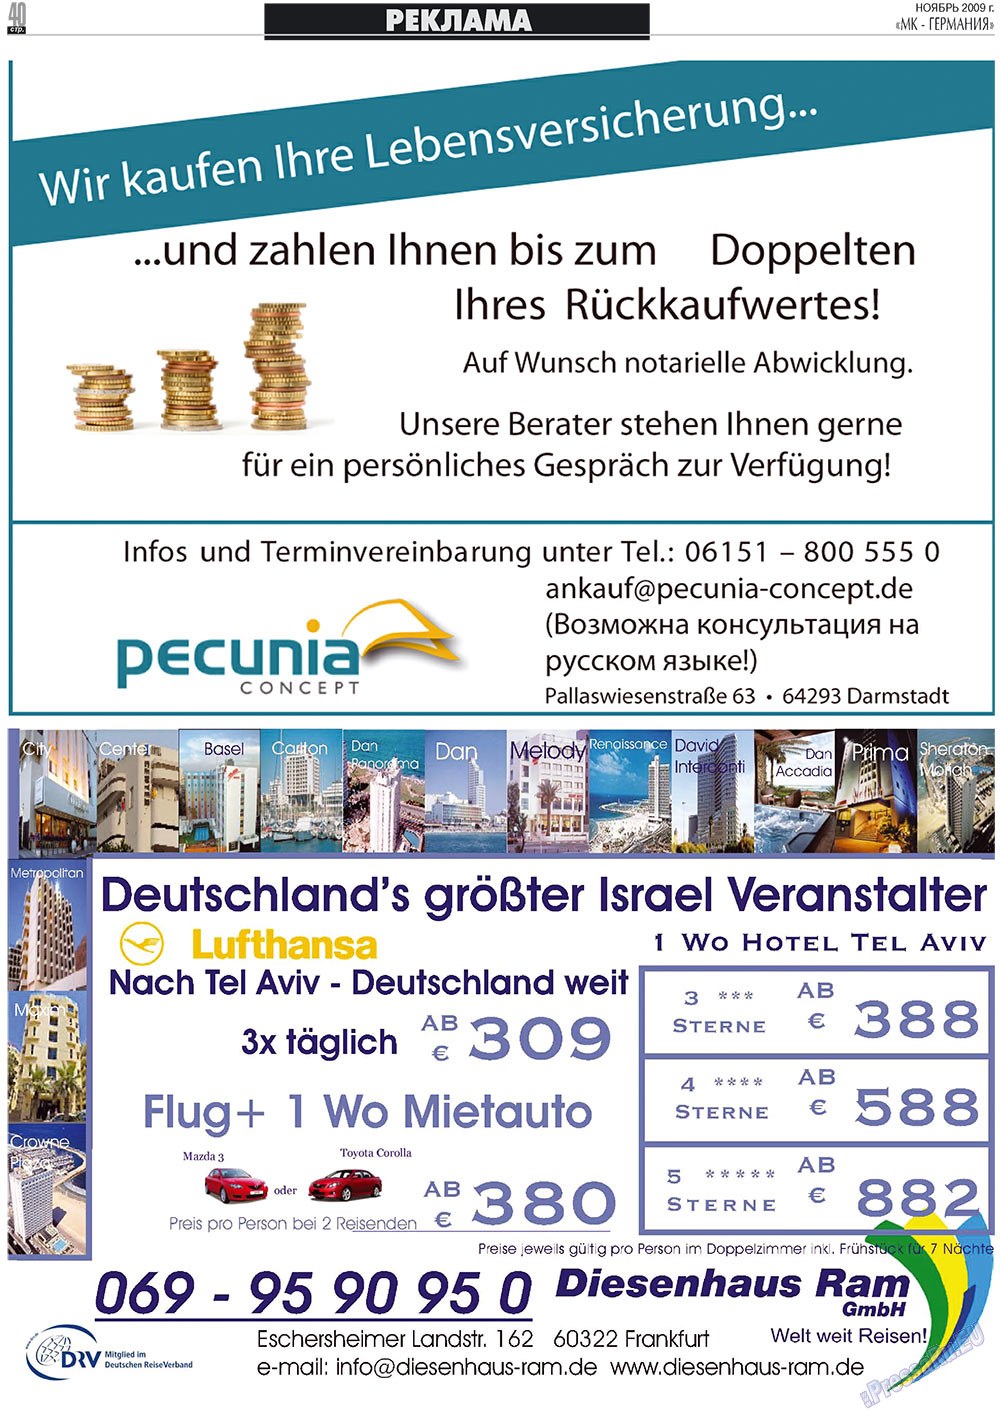 MK-Germany Landsleute (Zeitung). 2009 Jahr, Ausgabe 11, Seite 40